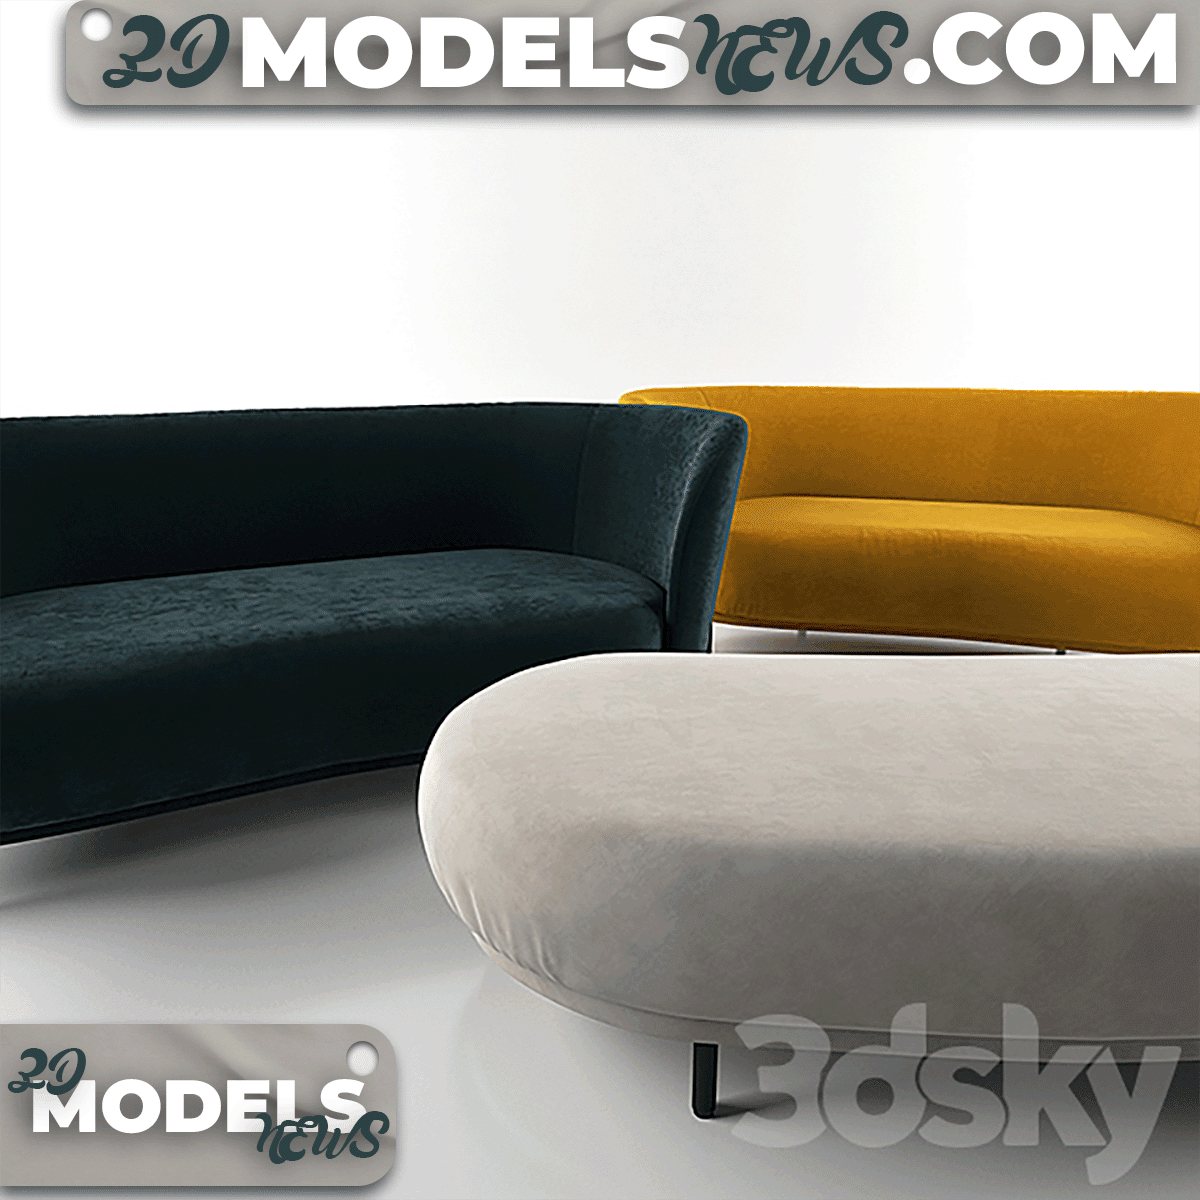 Sofa Model Dandy 2 Seater 3